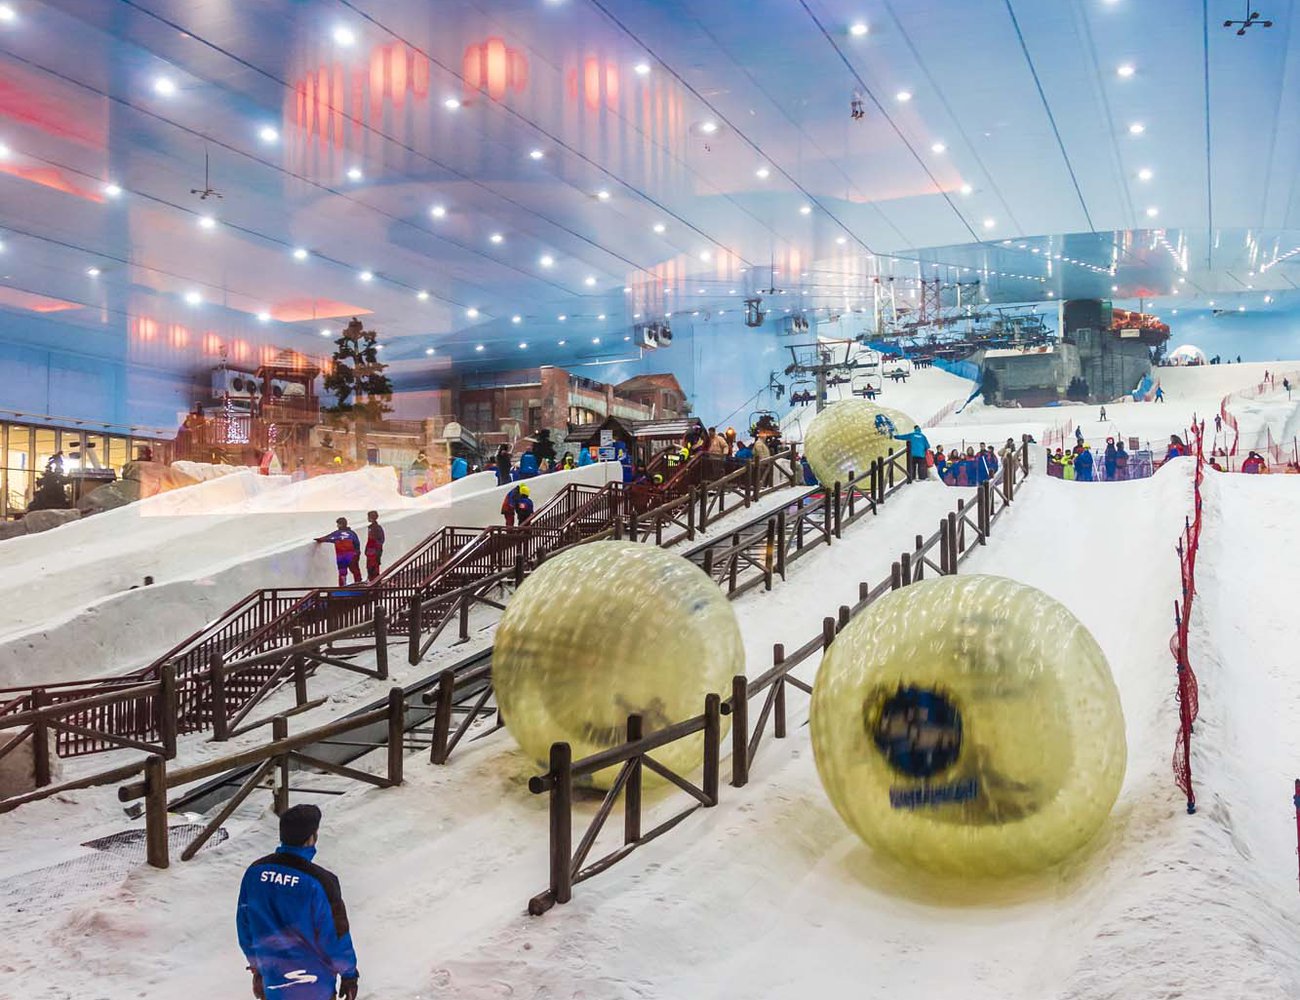 Ski Dubai's temperature is set at -1º Celsius year round